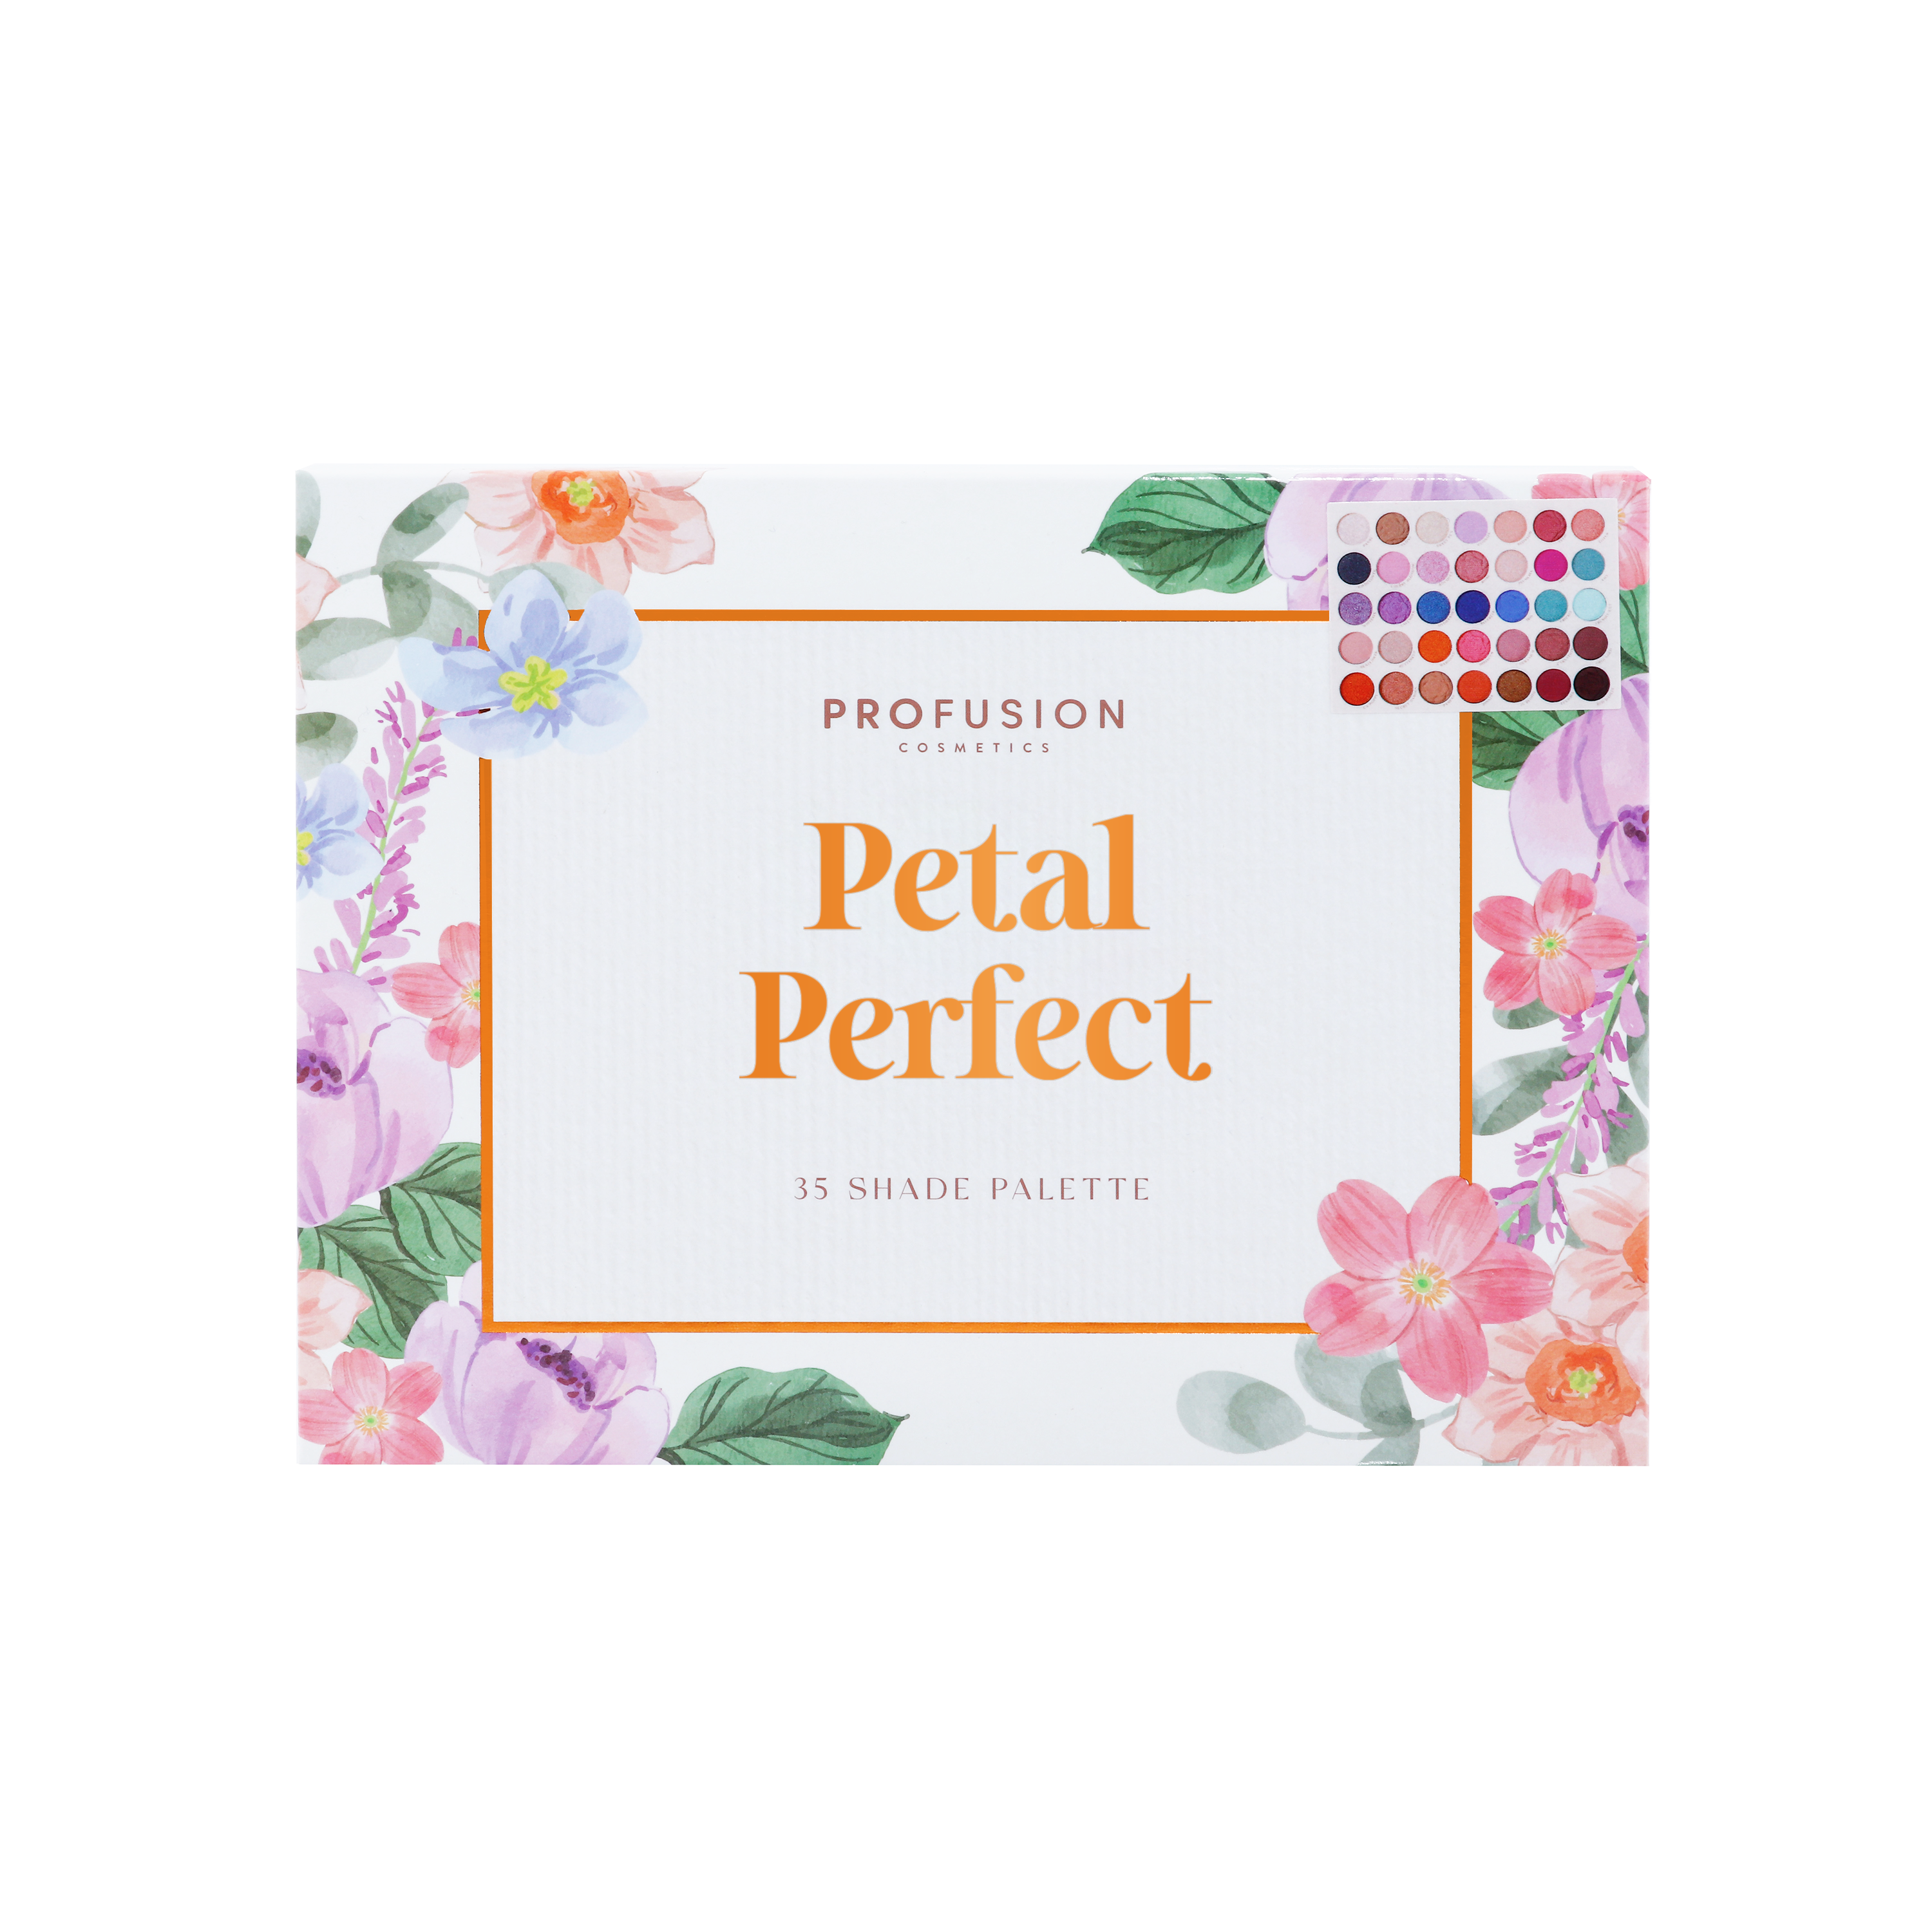 Petal Pefect | 35 Shade Palette